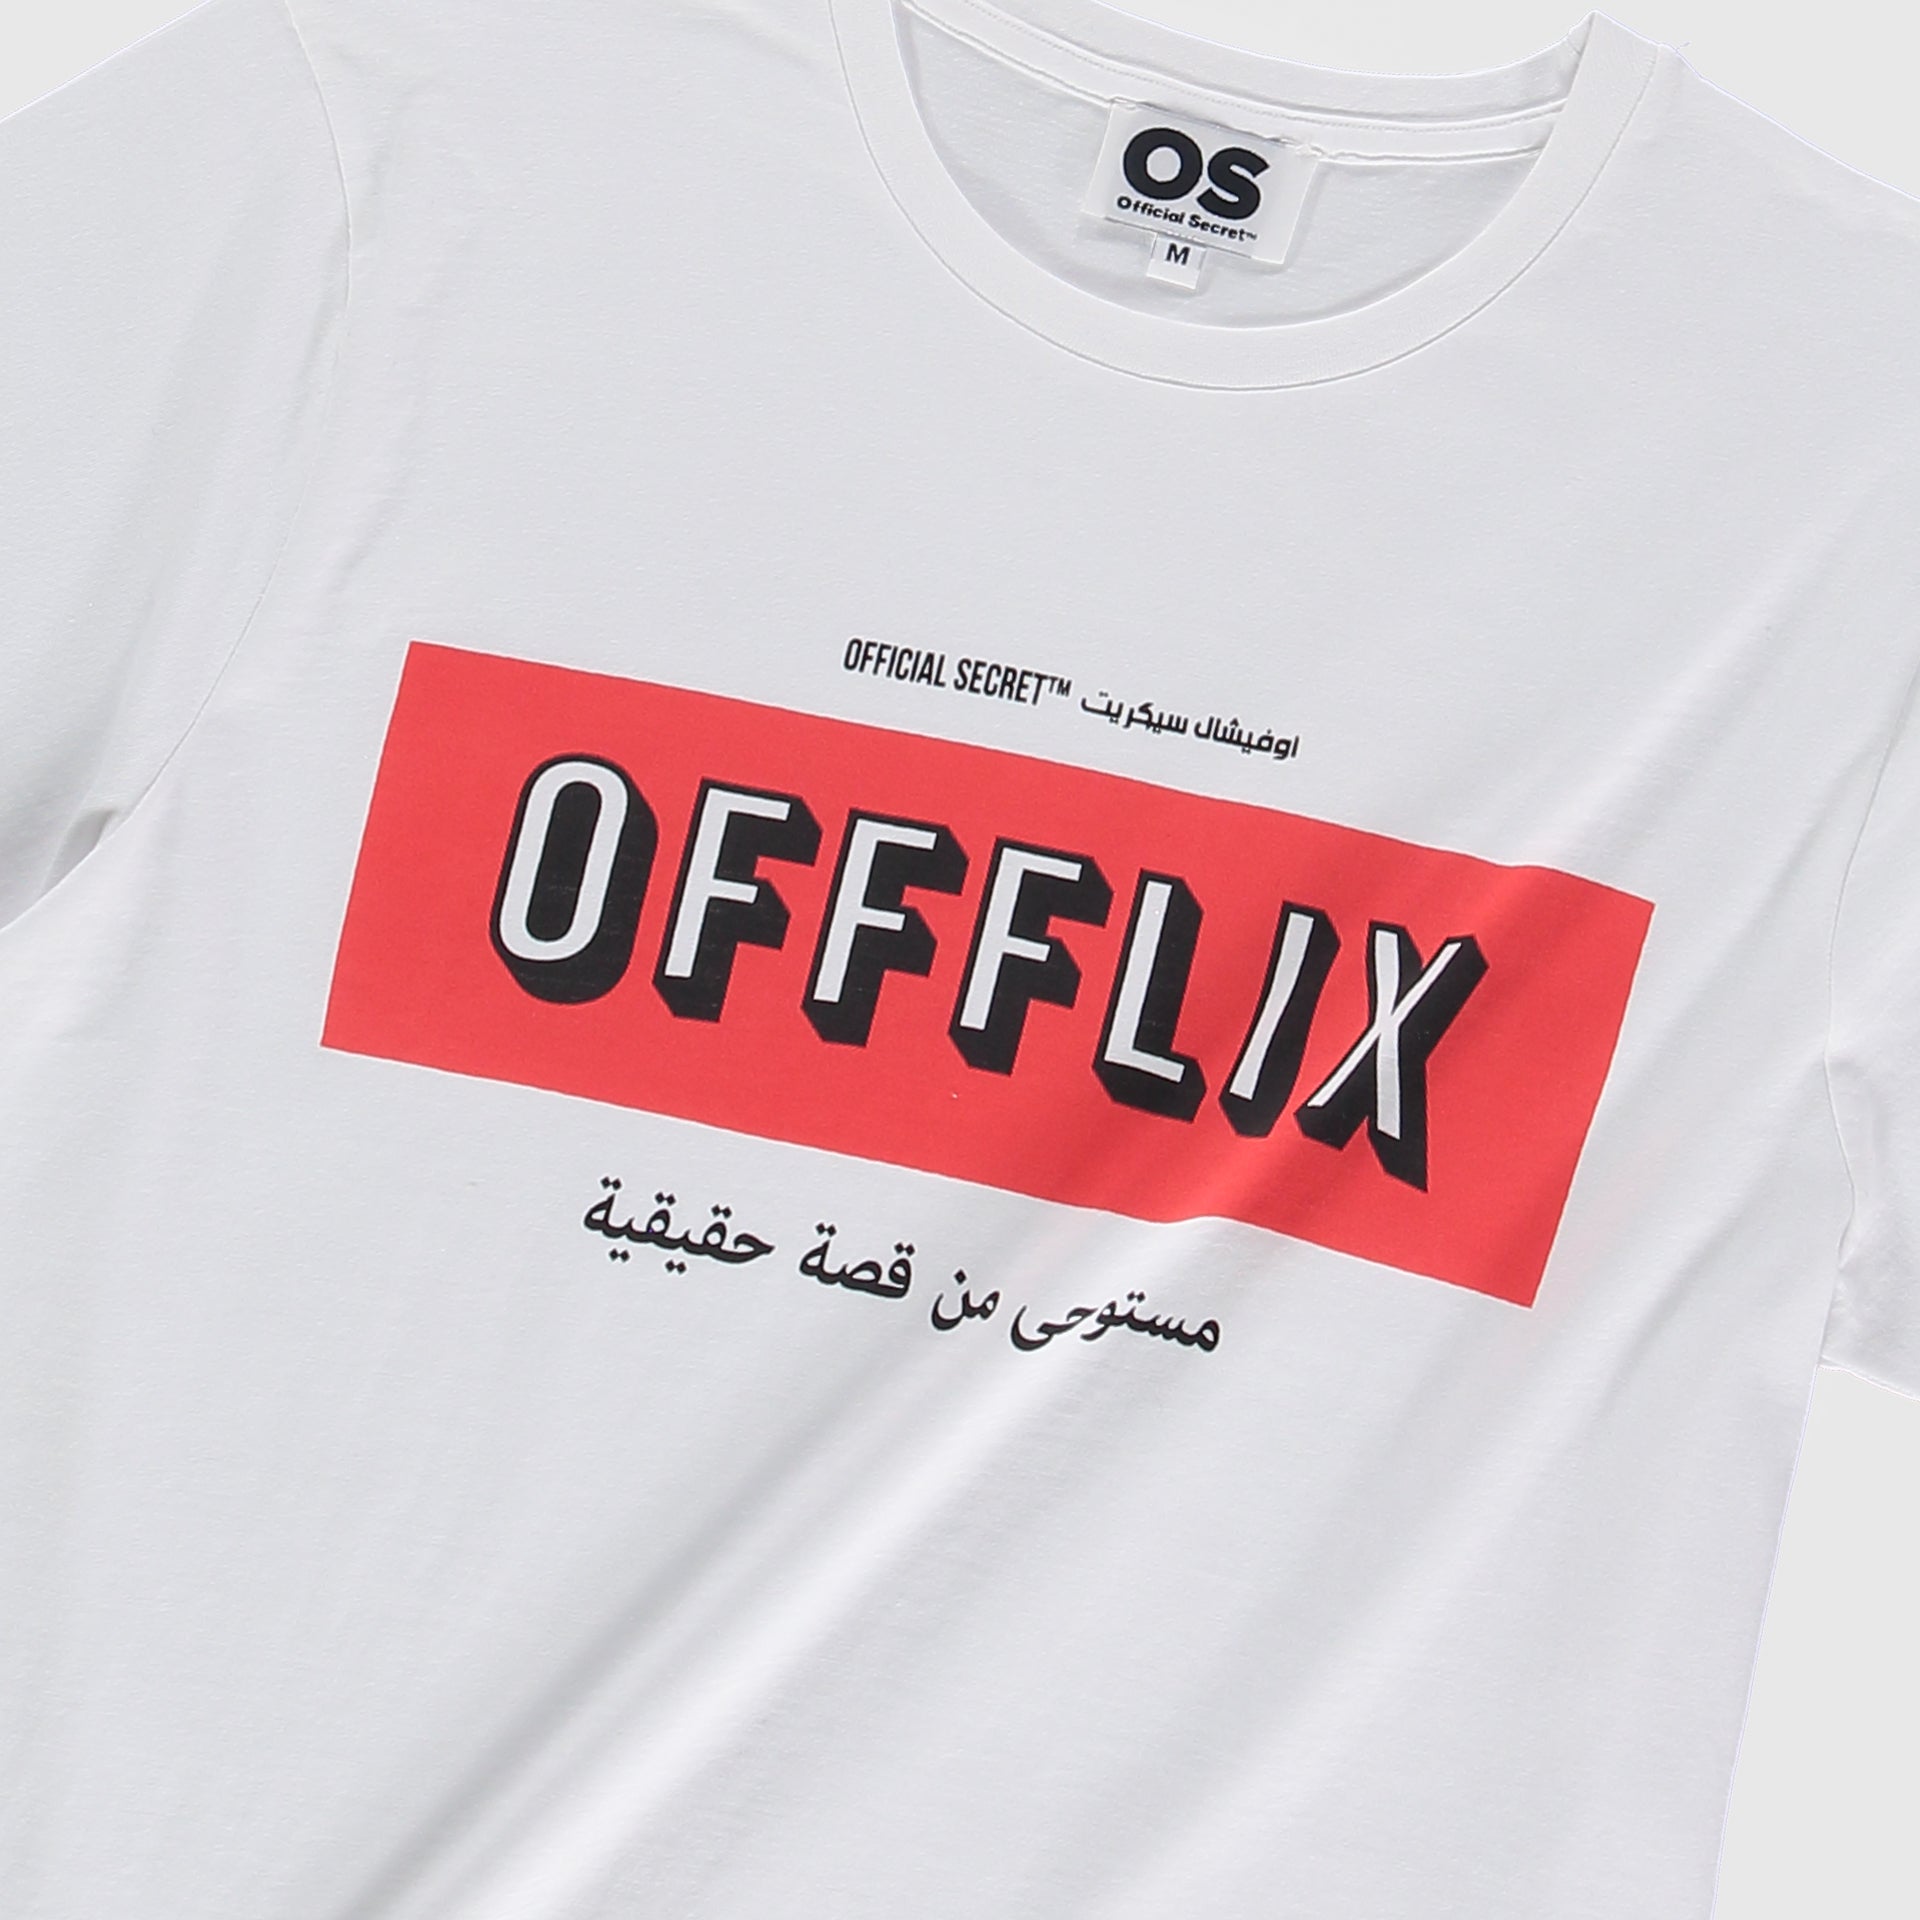 Offilex 100% Cotton T-Shirt From Official Secret